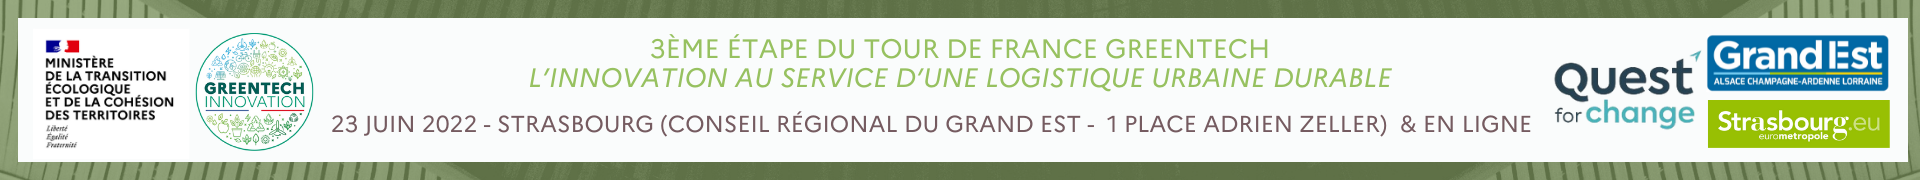 3ème étape du Tour de France Greentech - Logistique urbaine durable